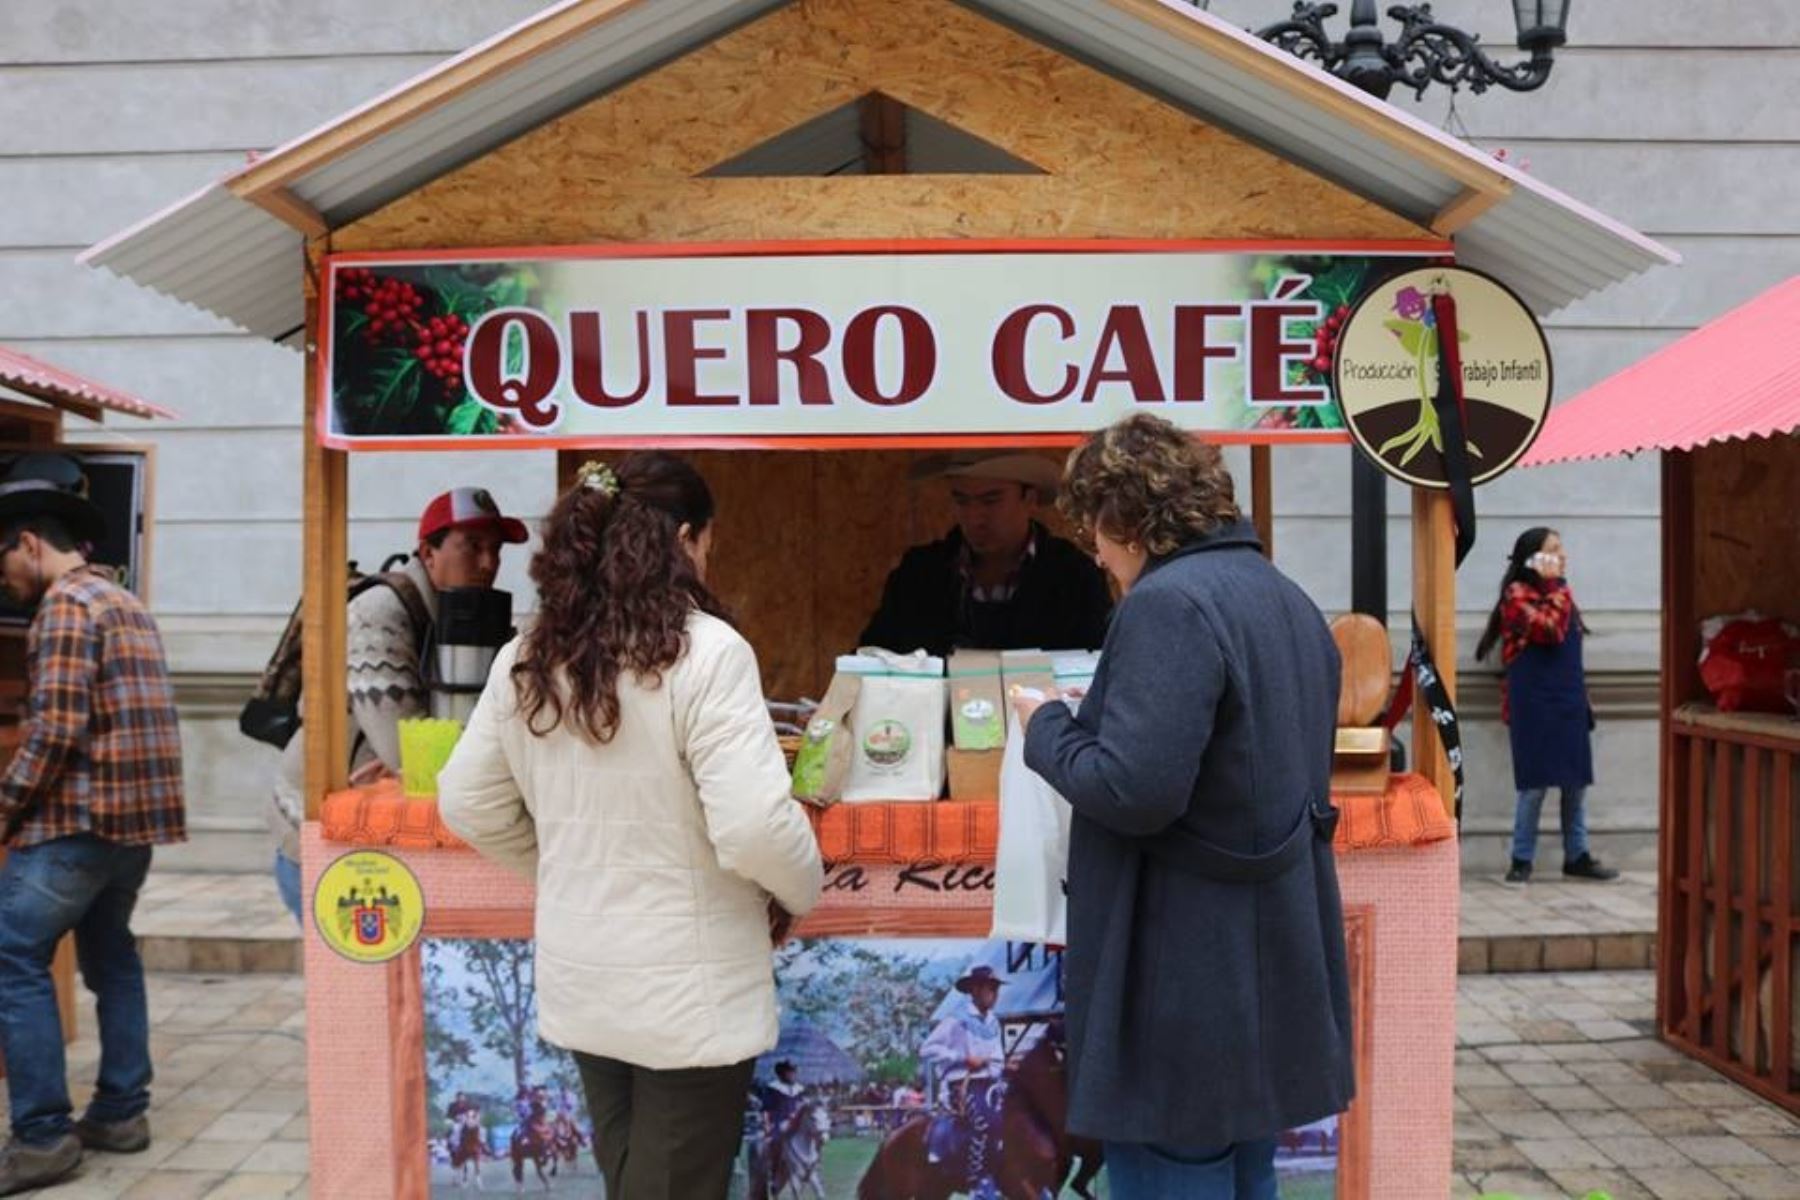 Se prevé la visita de más de 3000 especialistas en café, a nivel nacional e internacional.